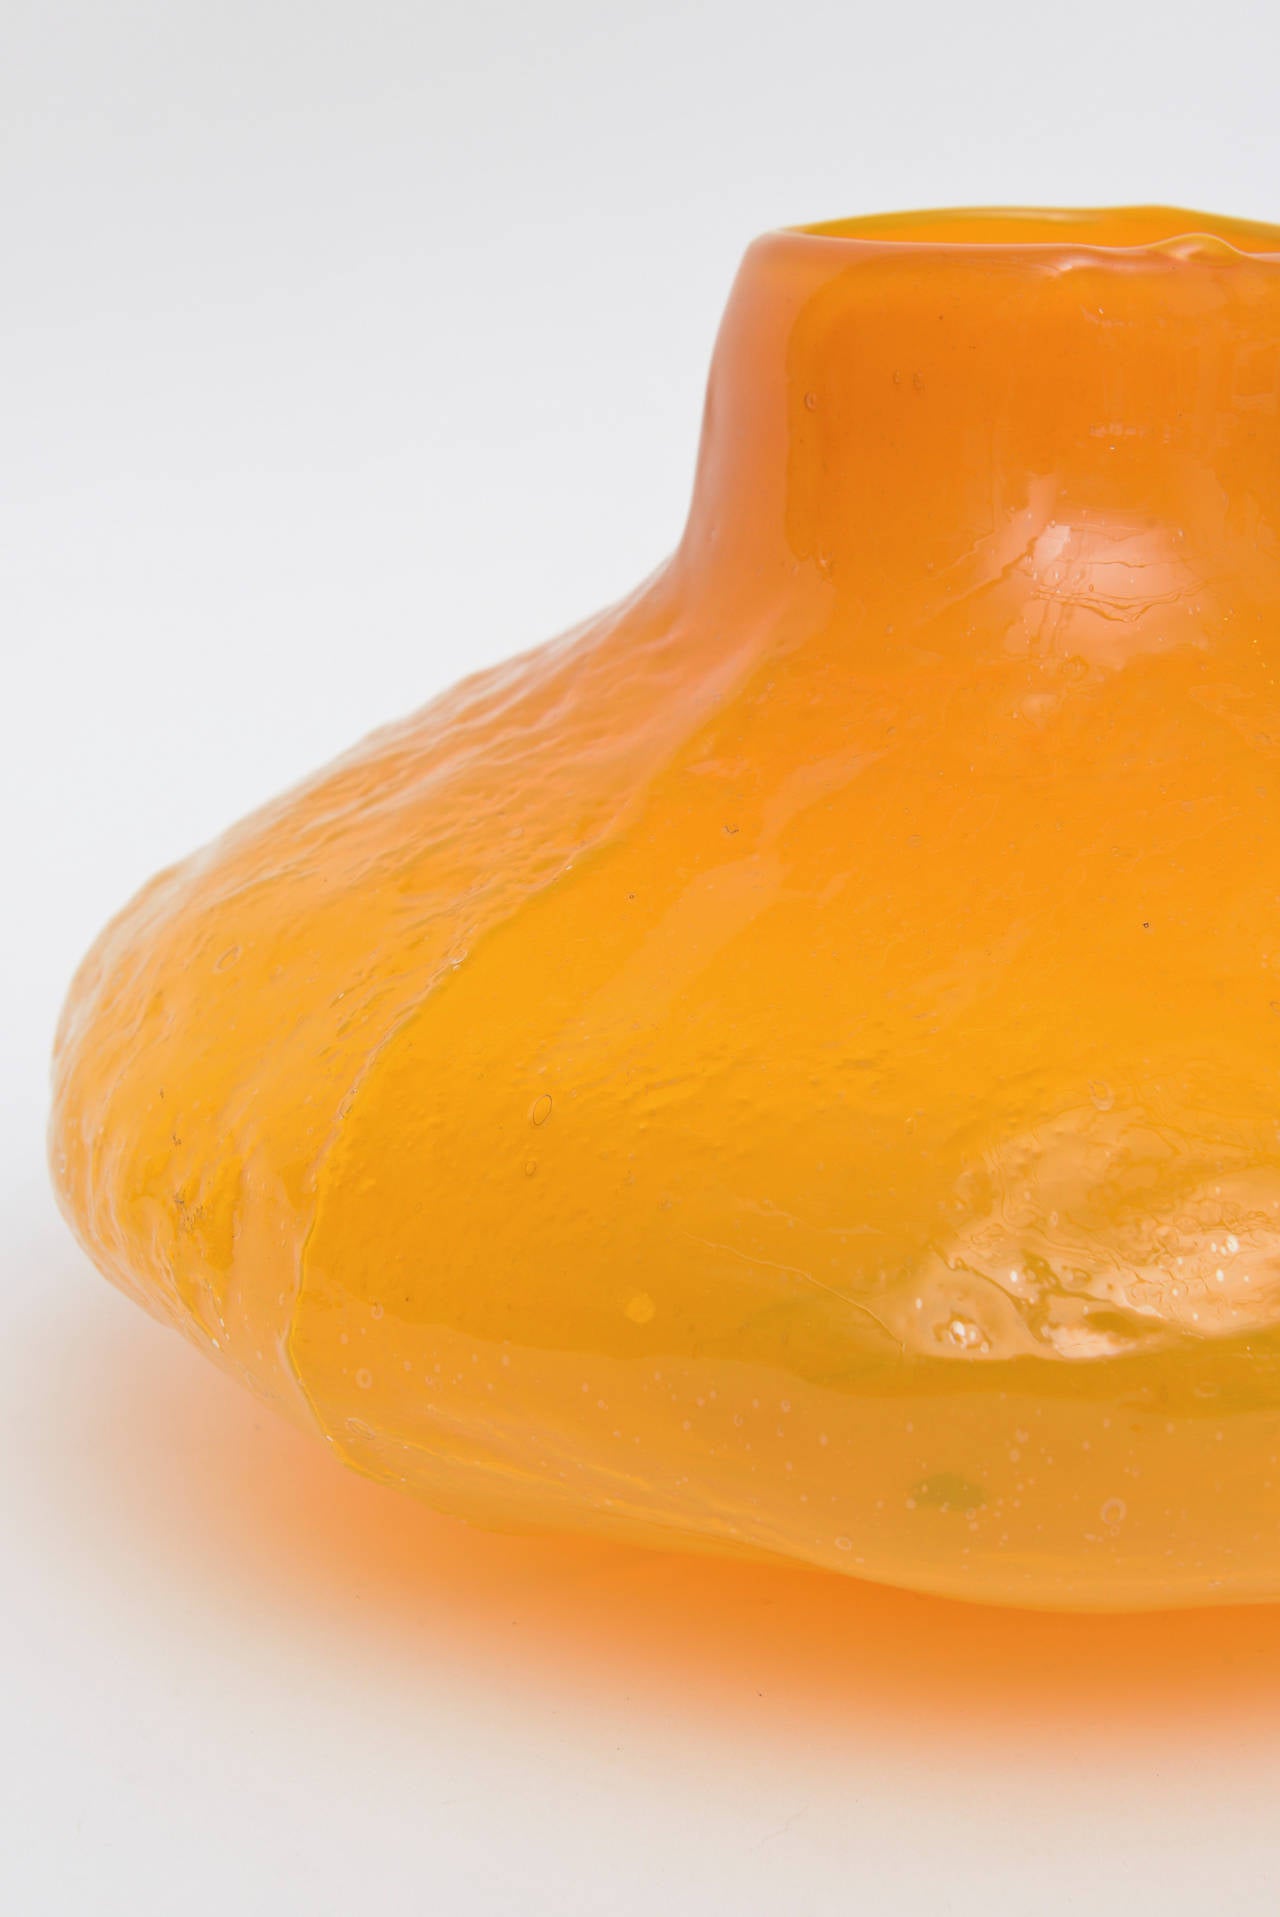 Rare Blenko Gourd Tangerine Orange Pebbled Textured Glass Vessel or Vase 2